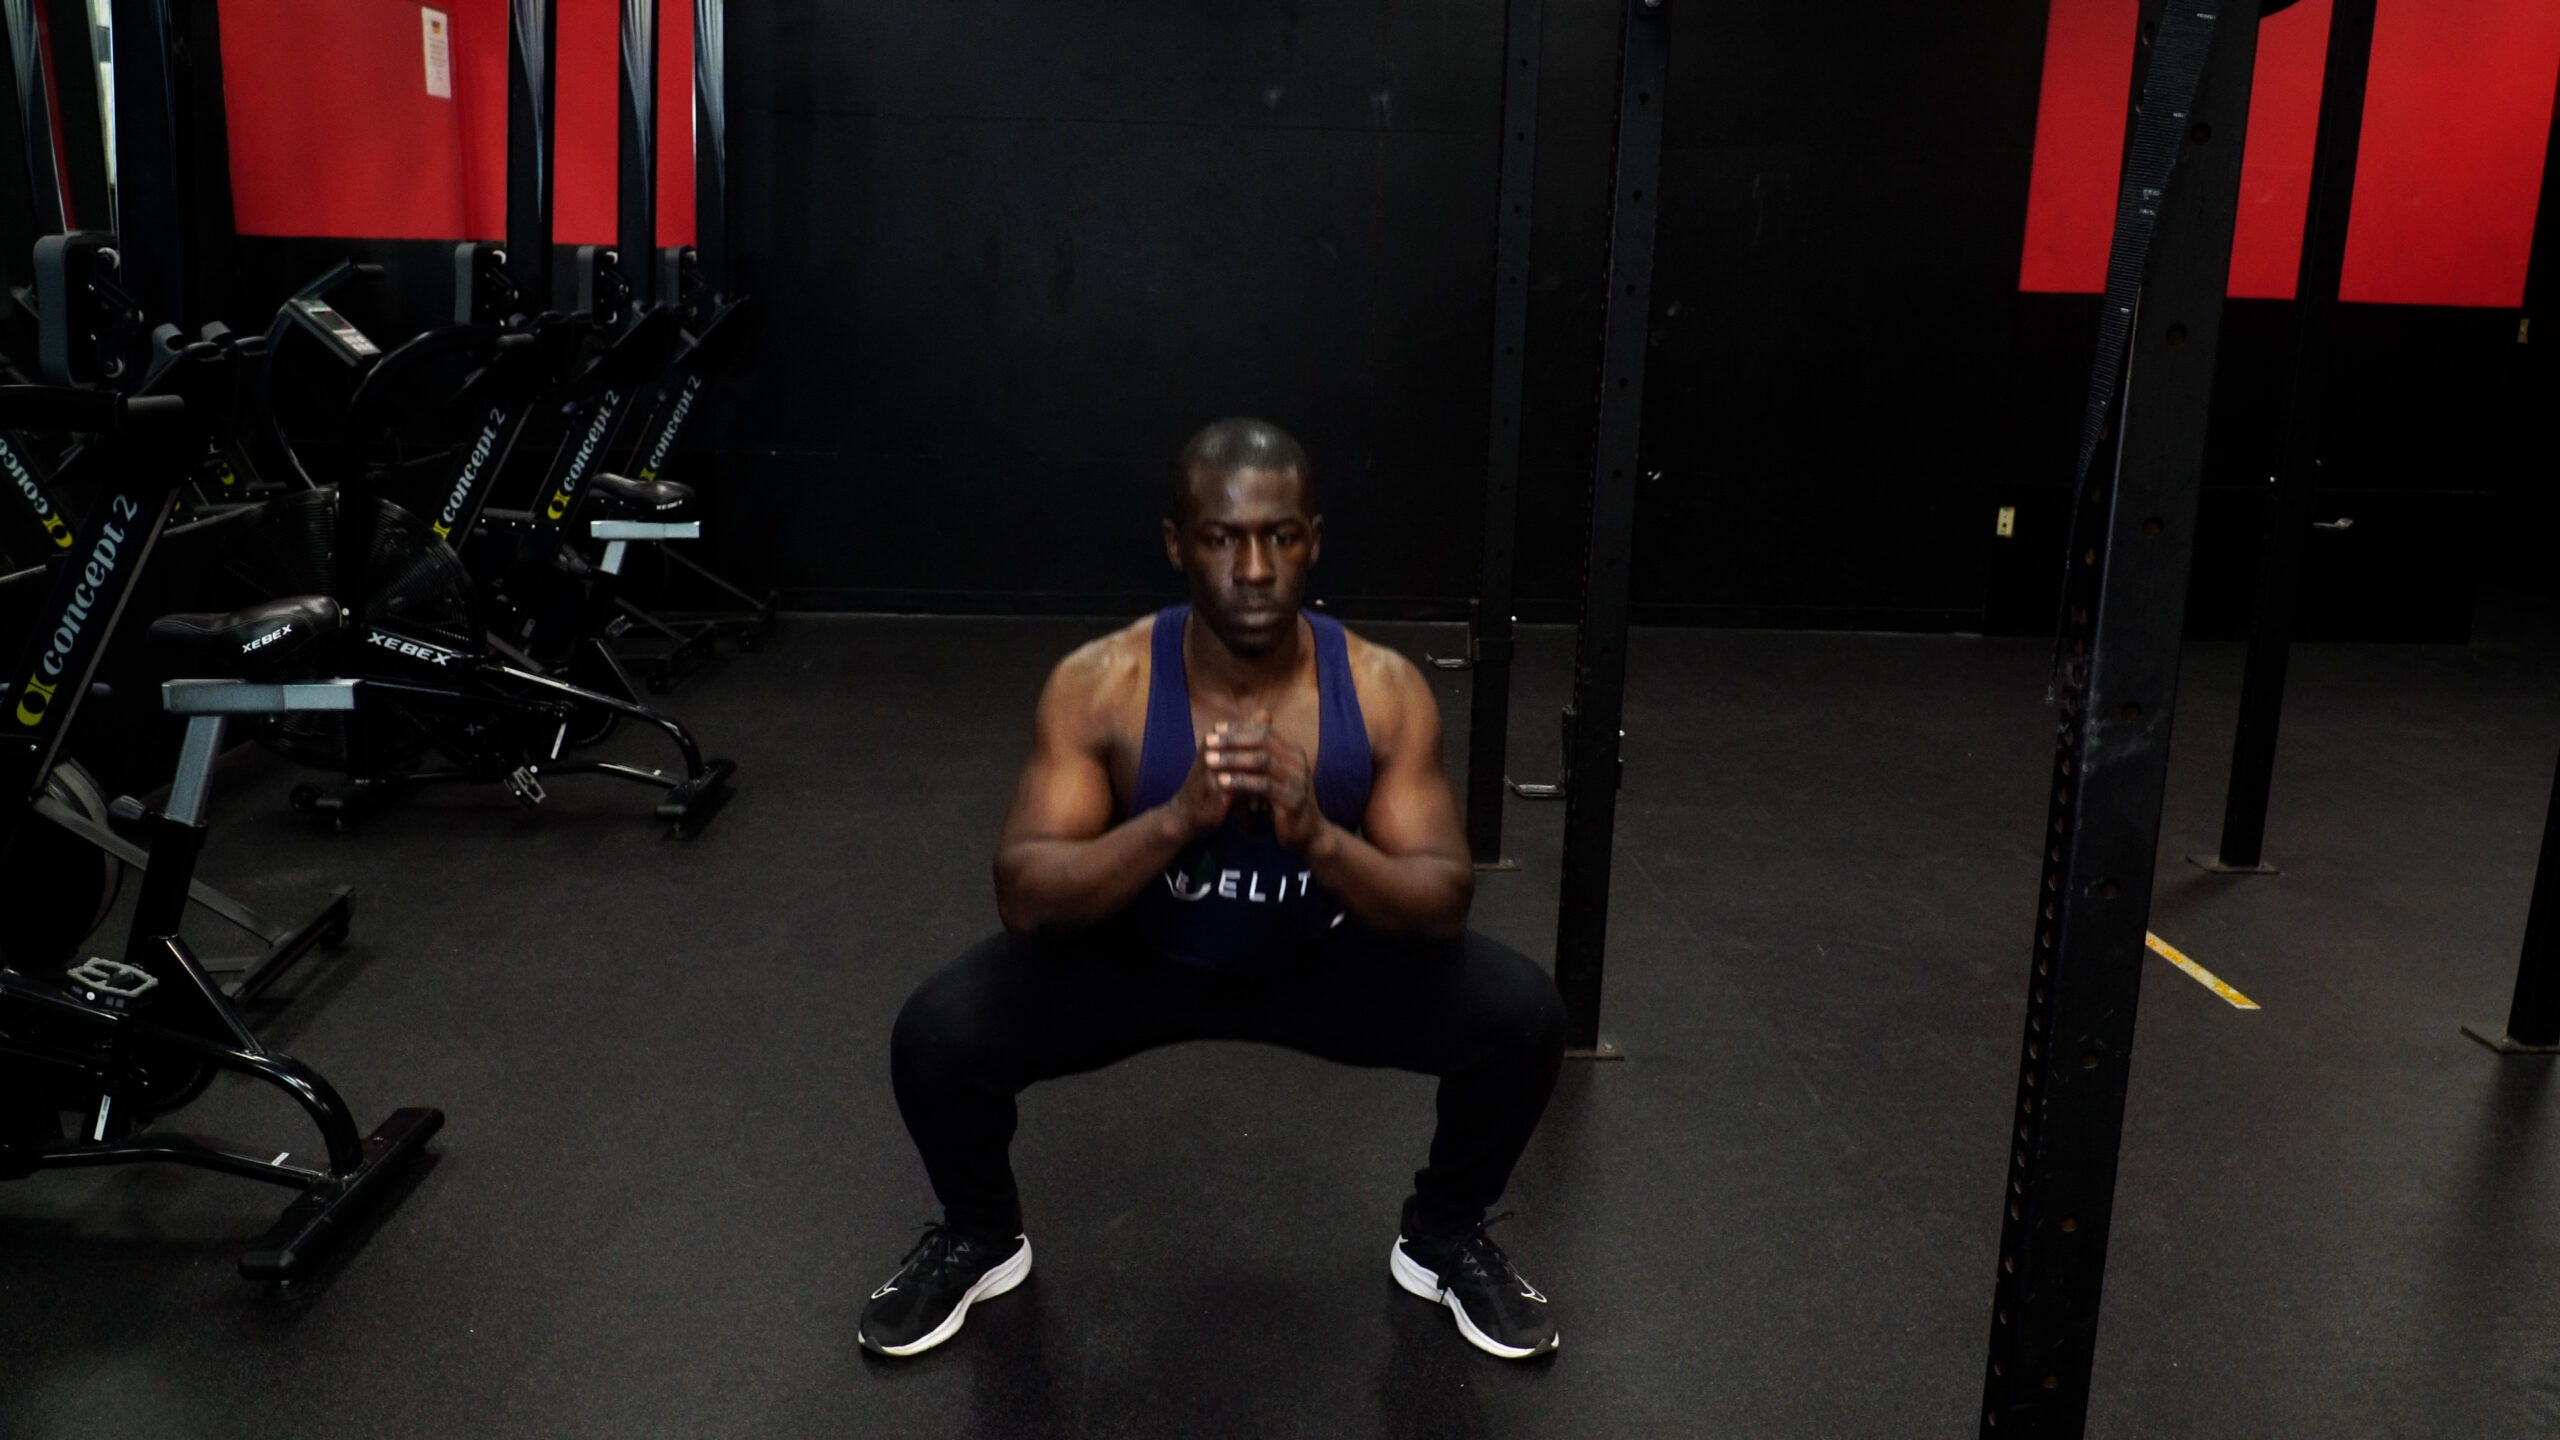 metabolic squat 4 week workout plan to lose weight